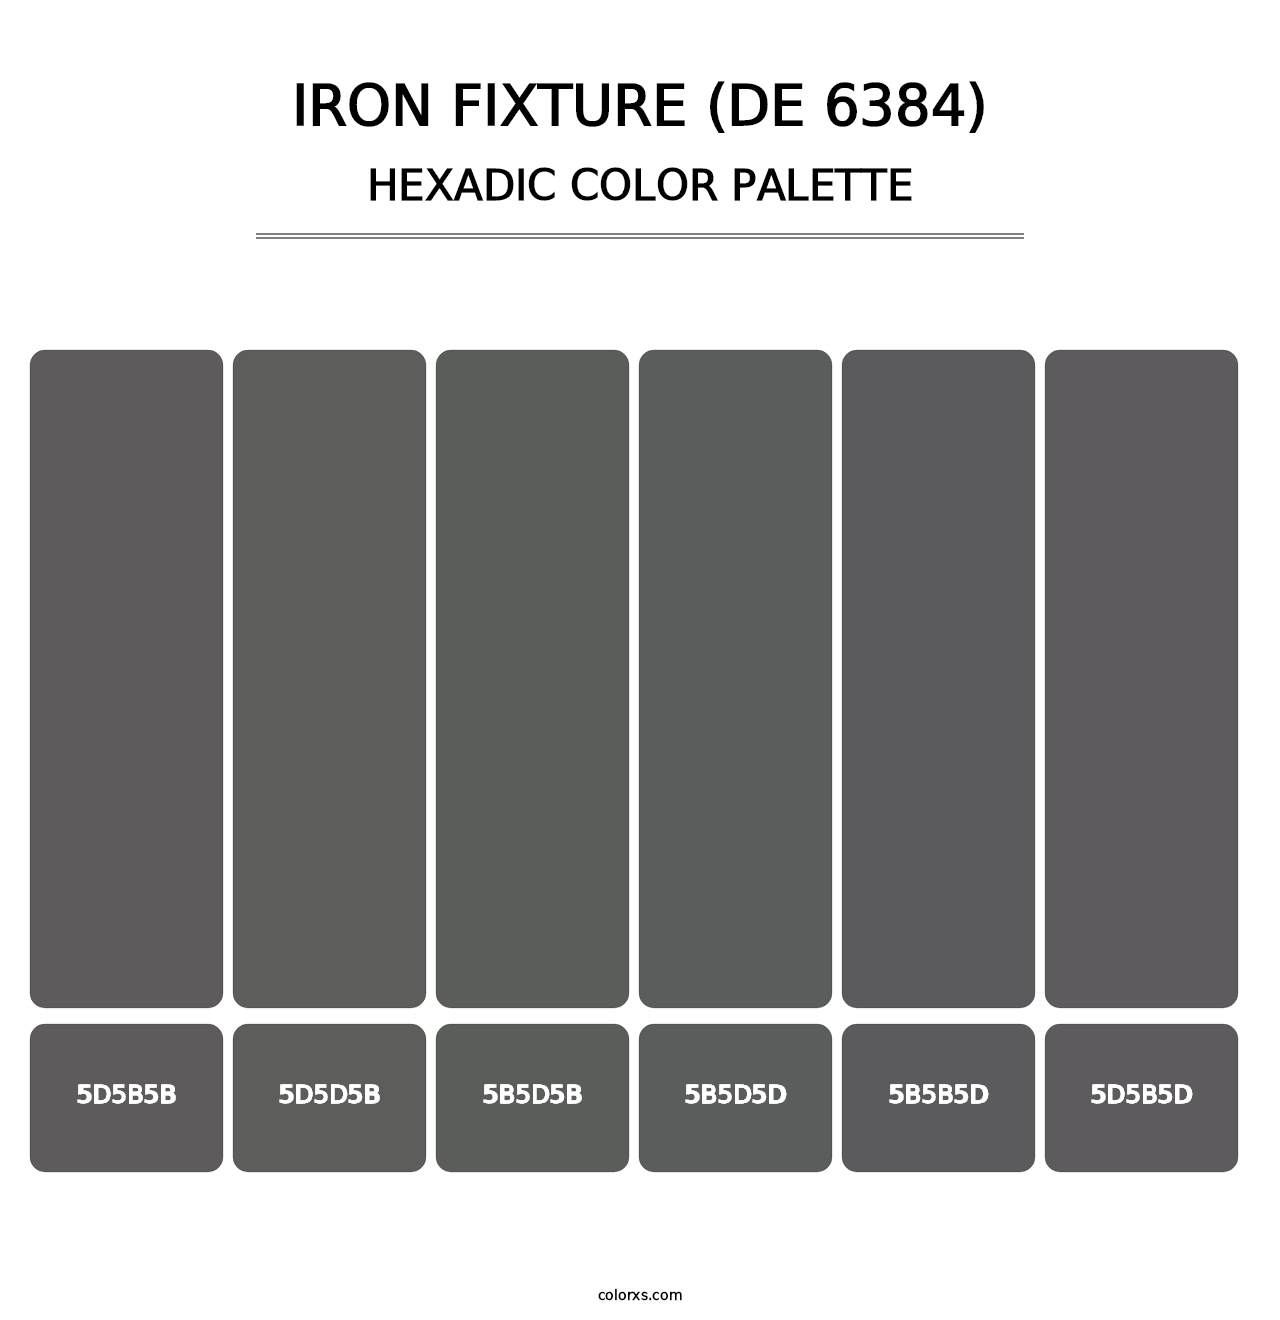 Iron Fixture (DE 6384) - Hexadic Color Palette